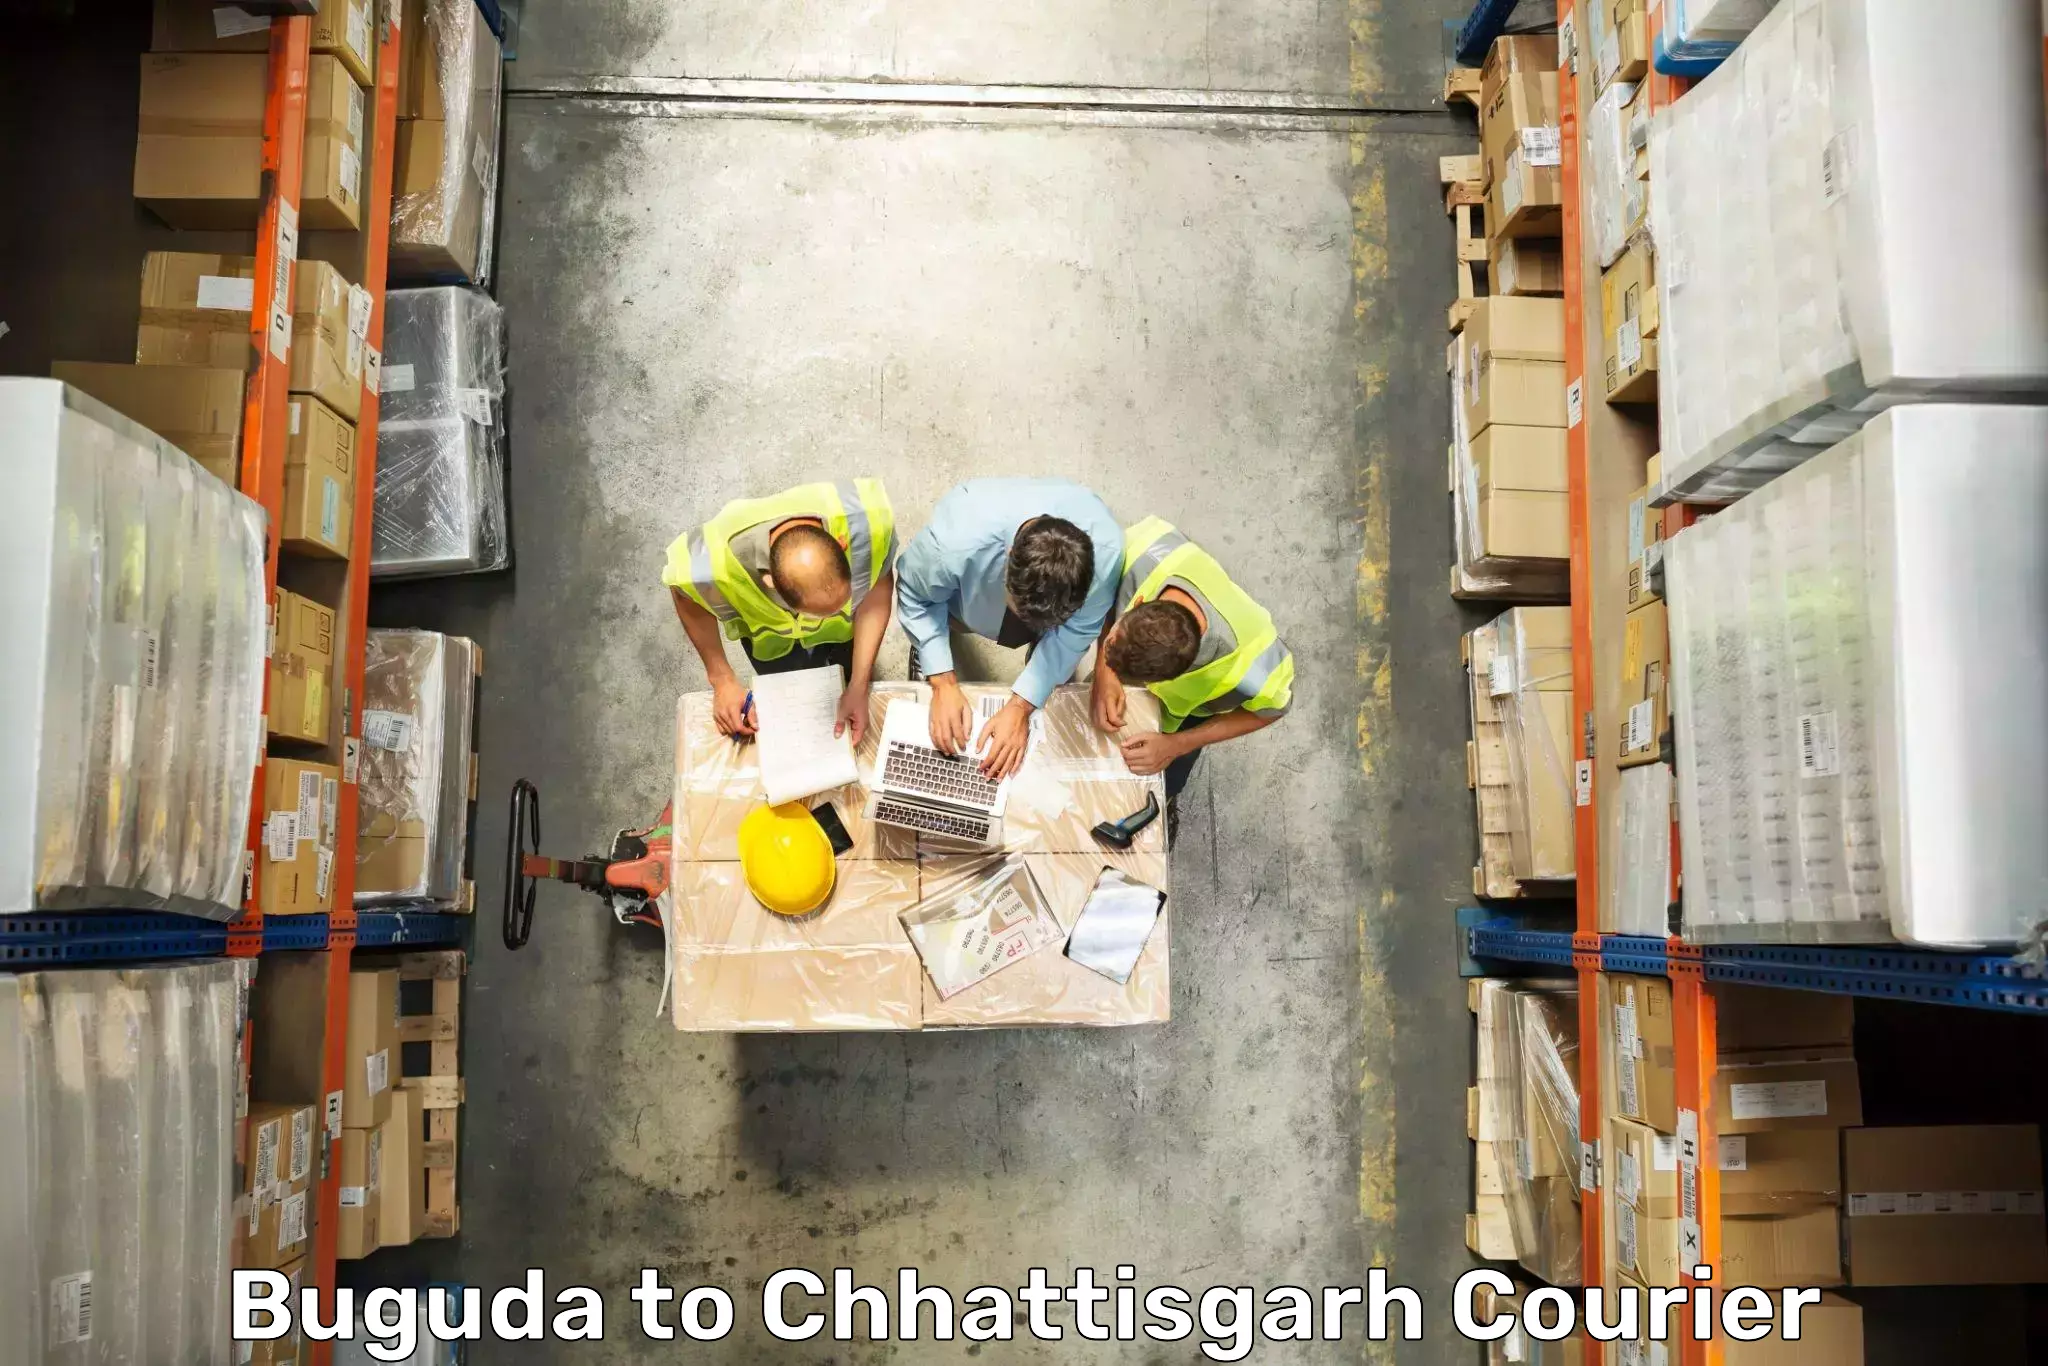 Comprehensive baggage service Buguda to Chhattisgarh